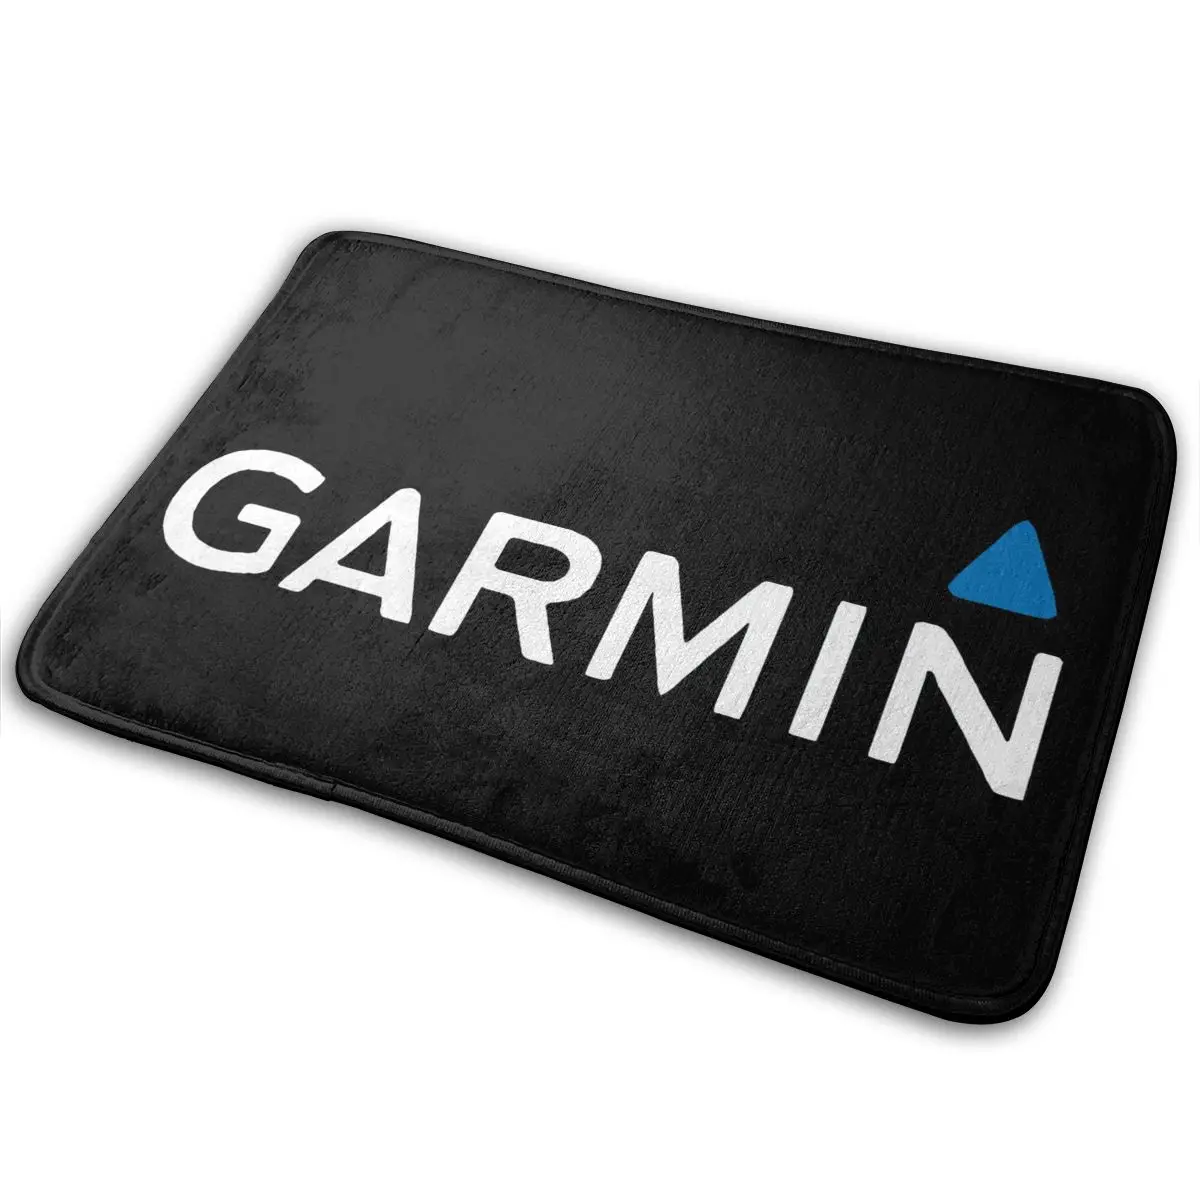 Garmin Pro Extreme Sport S M L 1 2 3 4 5 Xl nero nuovo personalizzato scegli S971 stampa testo